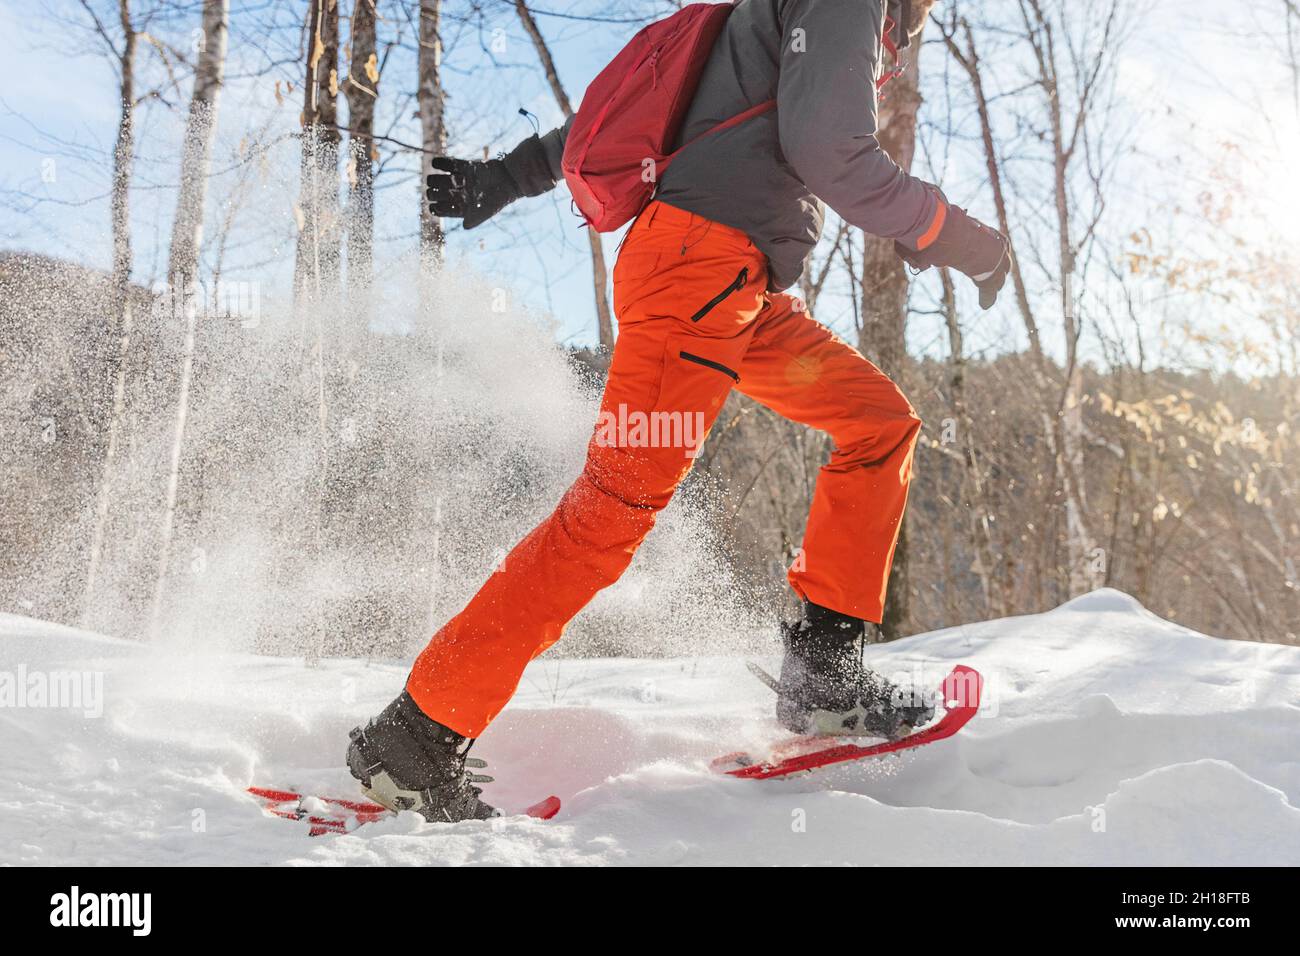 Wintersport Outdoor-Aktivität Mann läuft im Schnee in Schneeschuhen Spaß schneien draußen Stockfoto